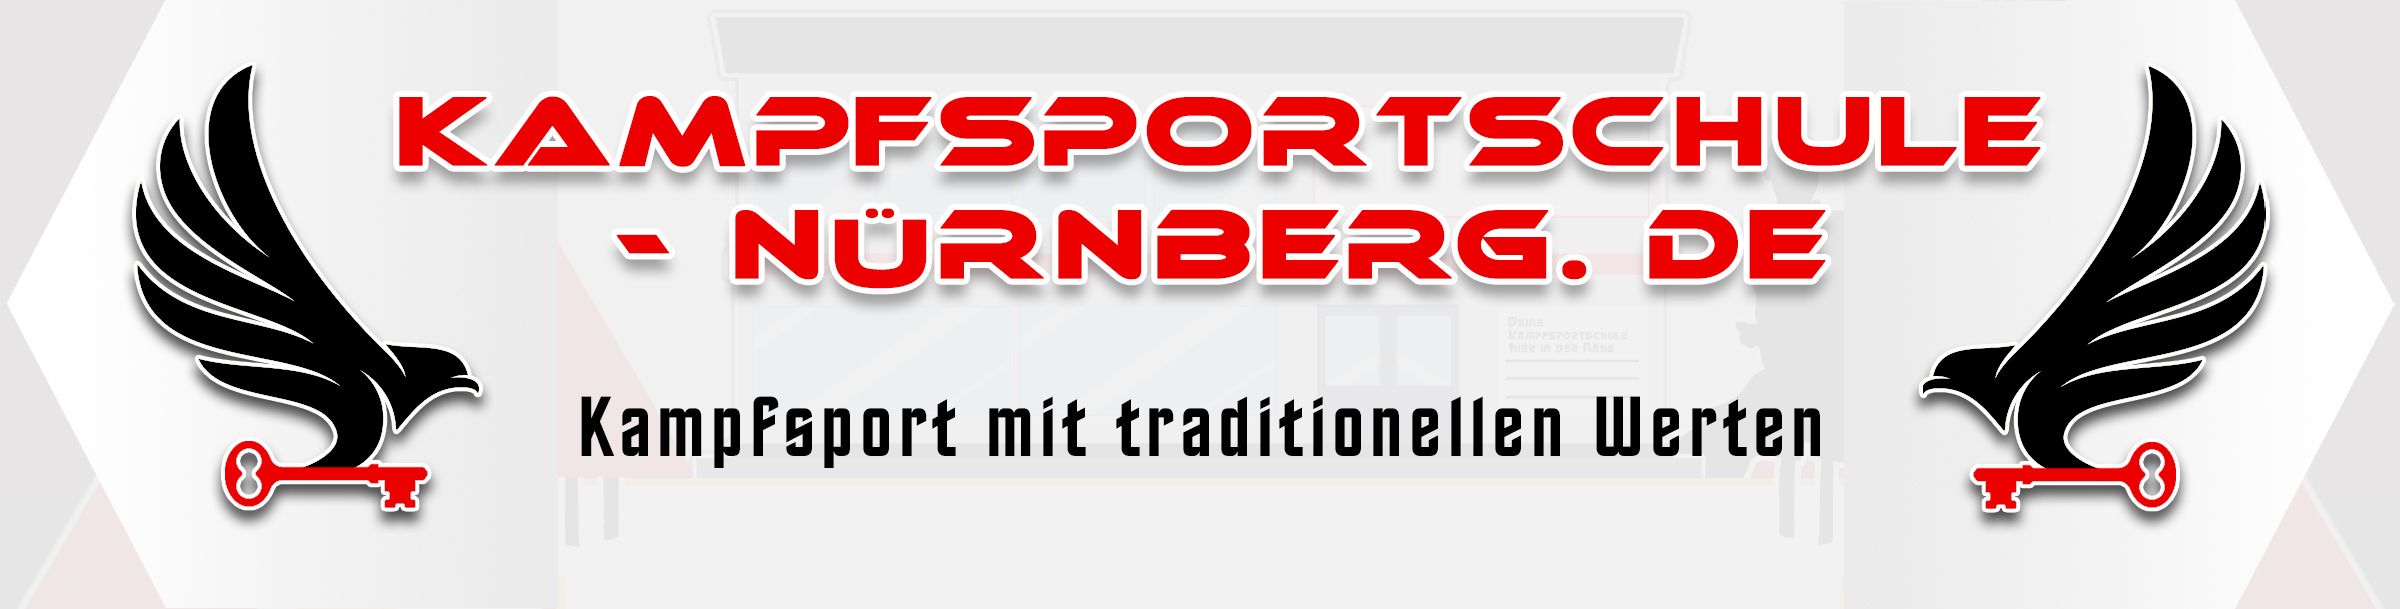 Banner Web - Kampfsportschule Nürnberg